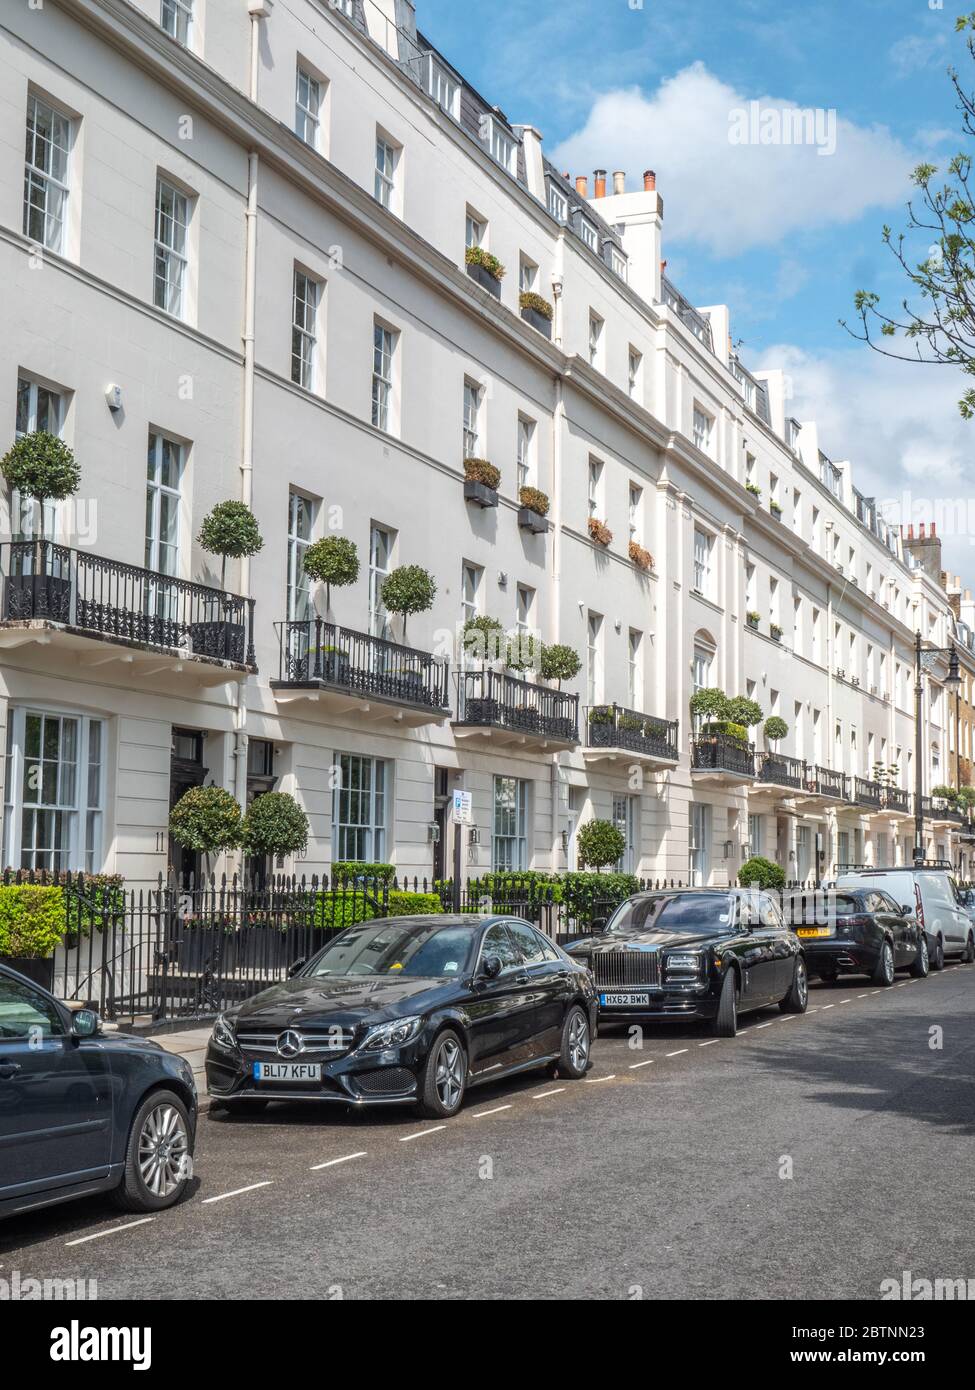 Belgravia, London, England. Eine Straßenszene mit georgianischer Architektur und Luxusautos, die typisch für den exklusiven Stadtteil West London sind. Stockfoto